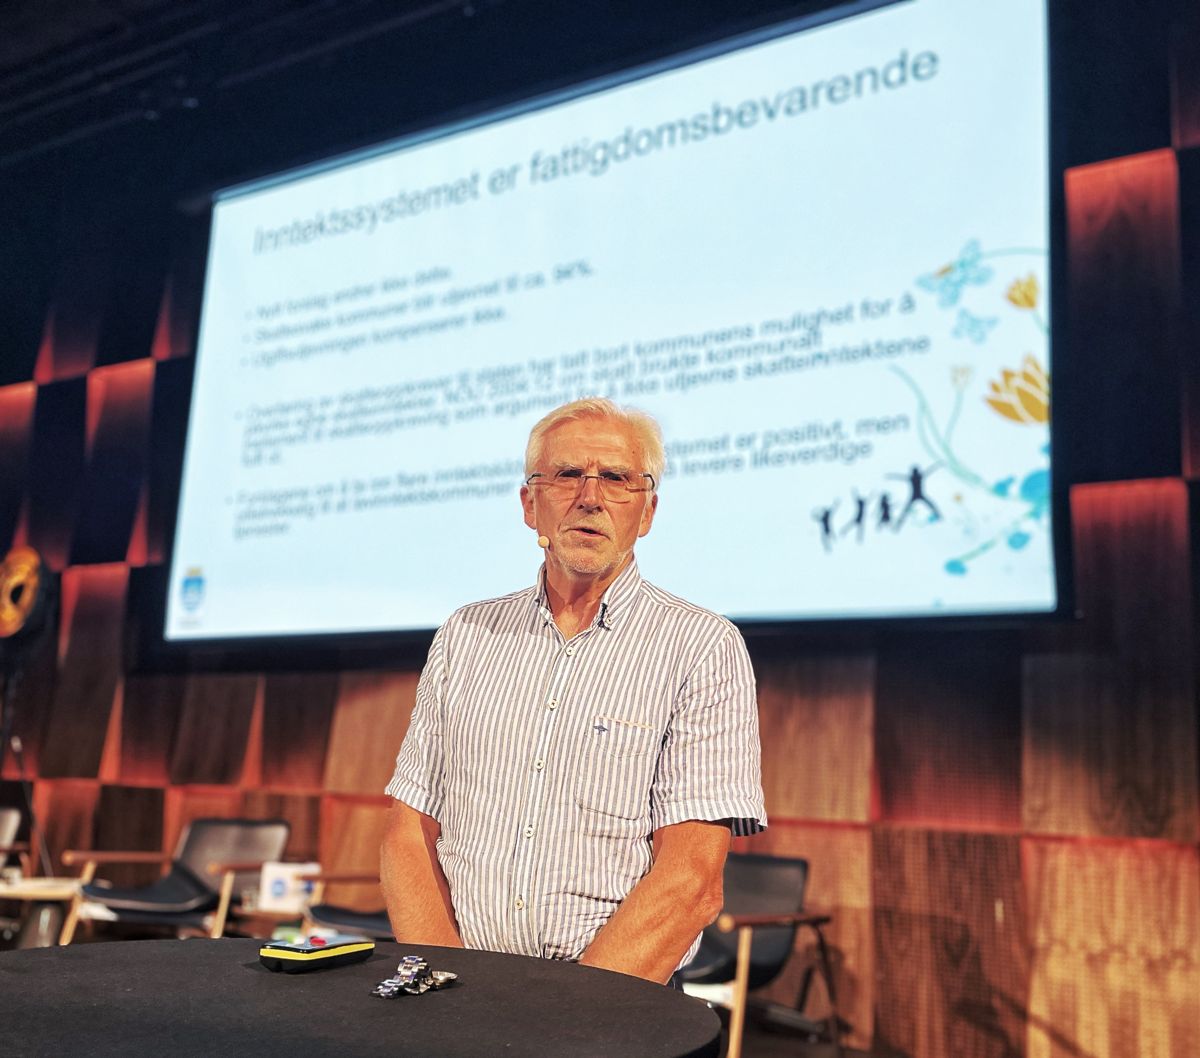 Kommunedirektør Harald Danielsen i Arendal etterlyser mer debatt om forskjeller mellom kommuner i forbindelse med inntektssystemutvalgets utredning.